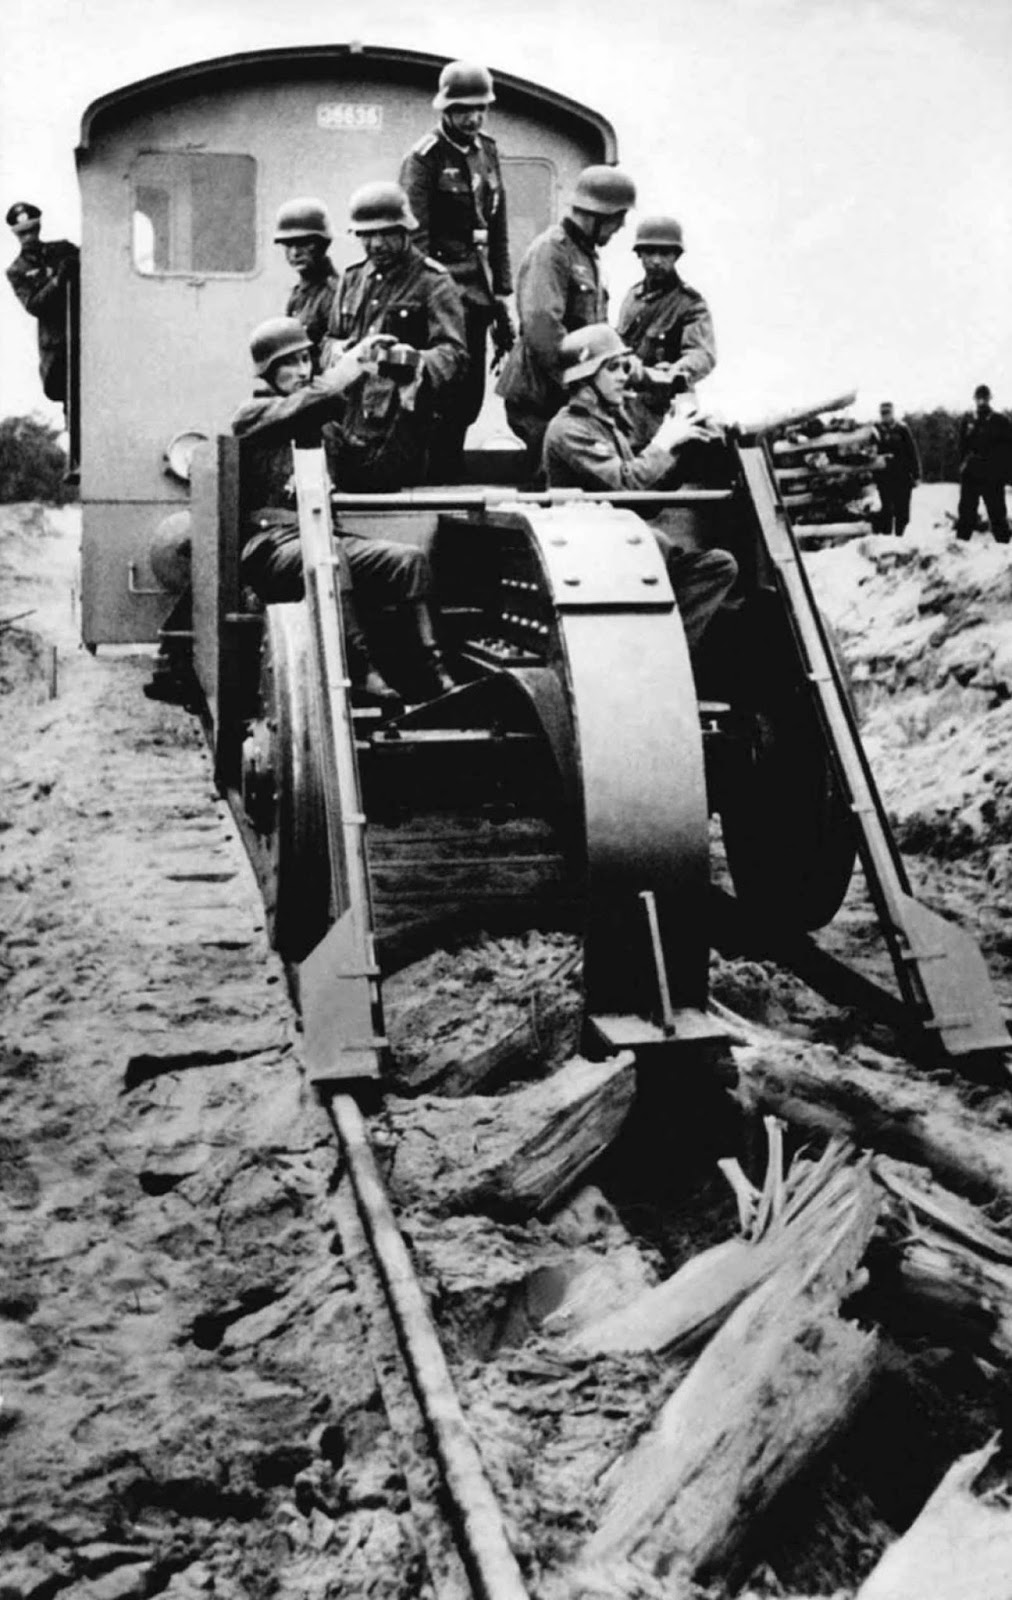 Schienenwolf destroying rail tracks during German retreat, 1944